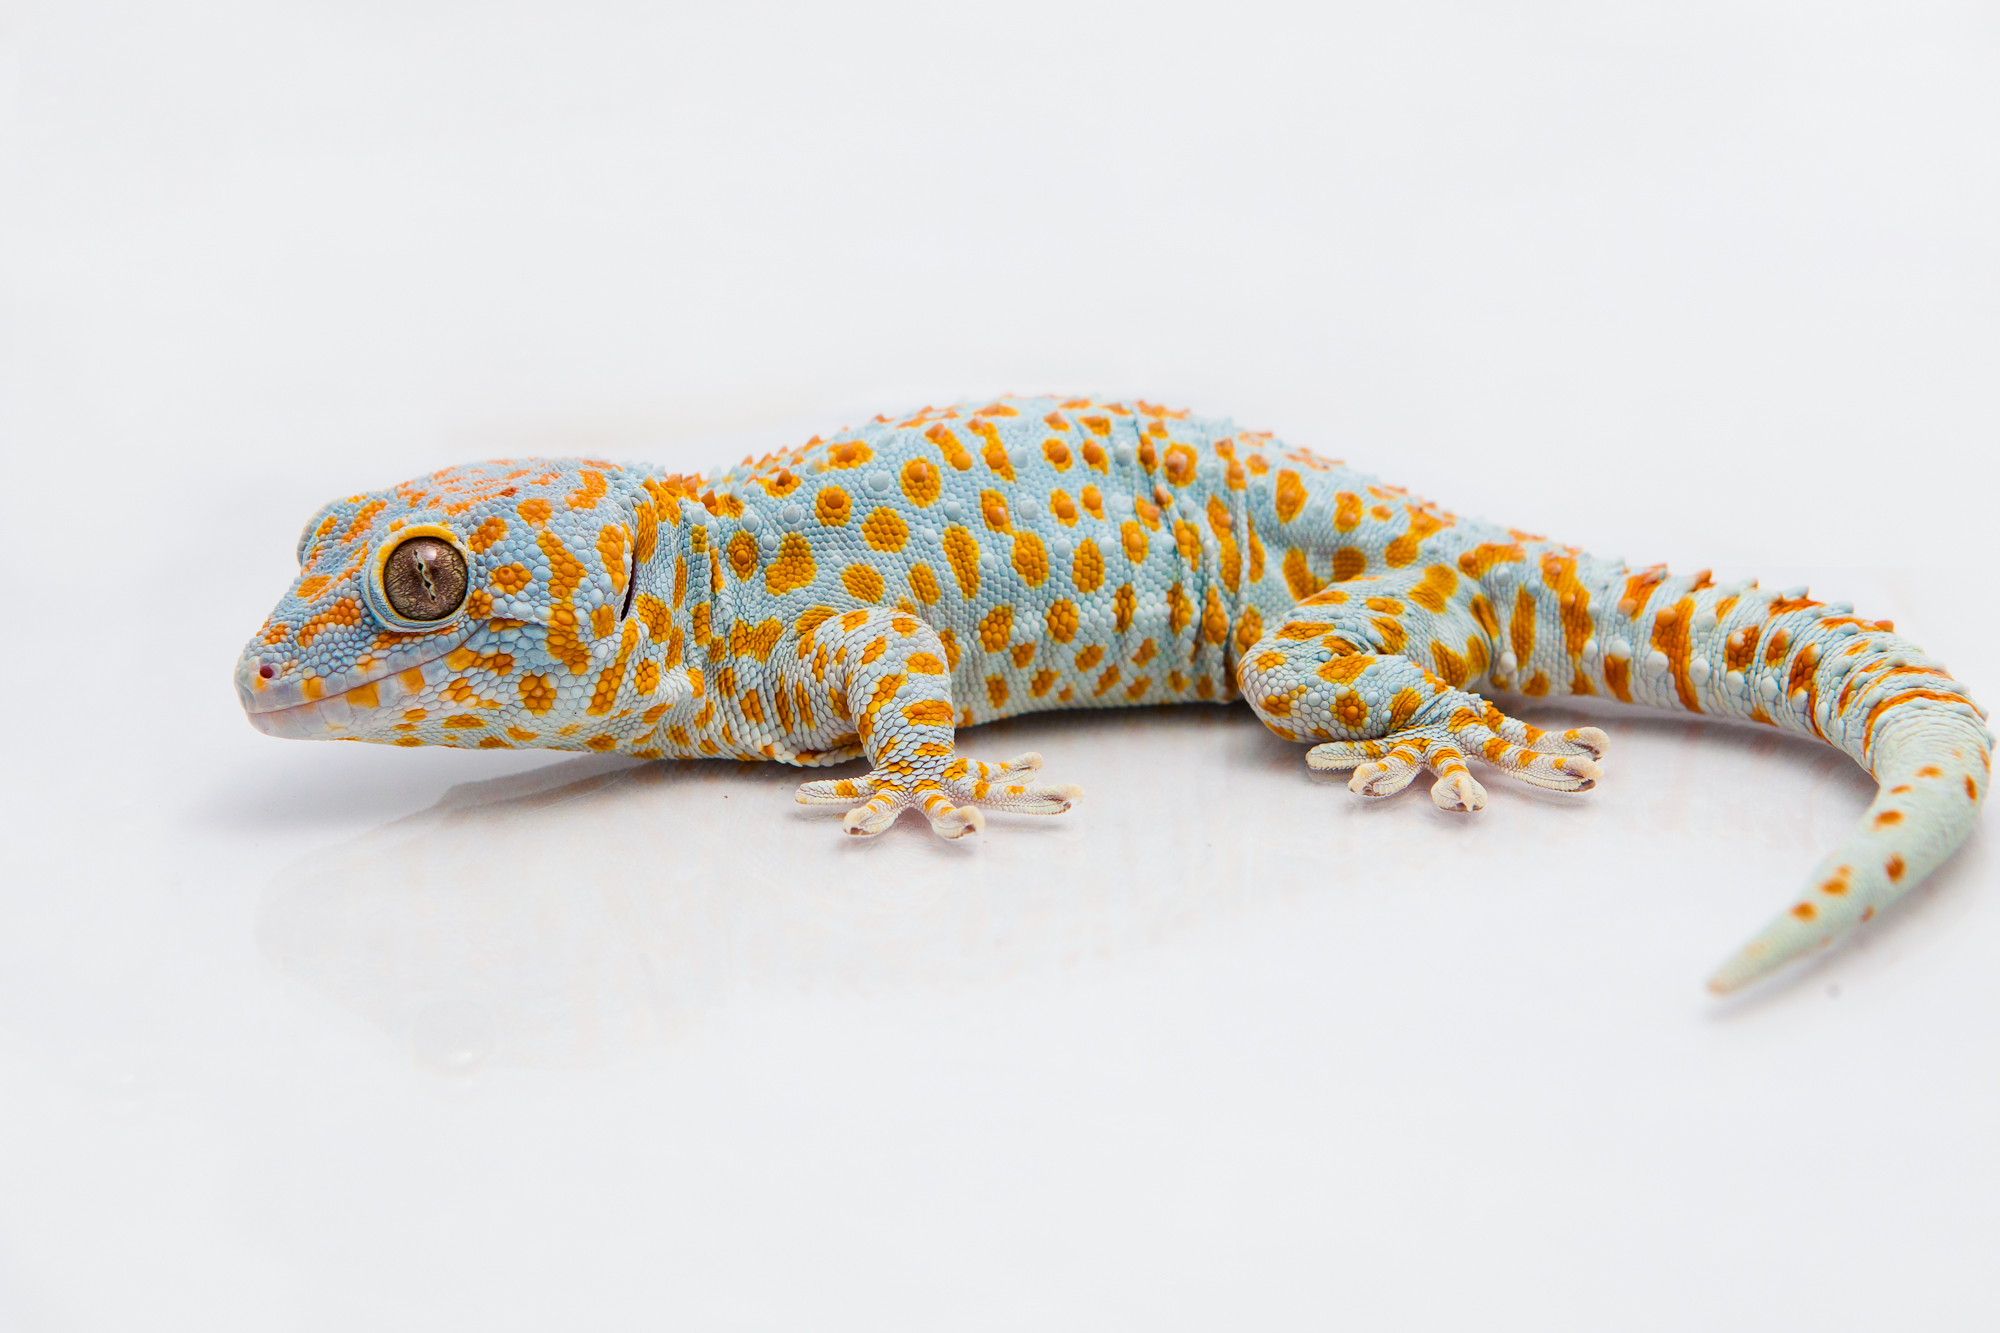 Tokay gecko (Gekko gecko) | Geckskin™